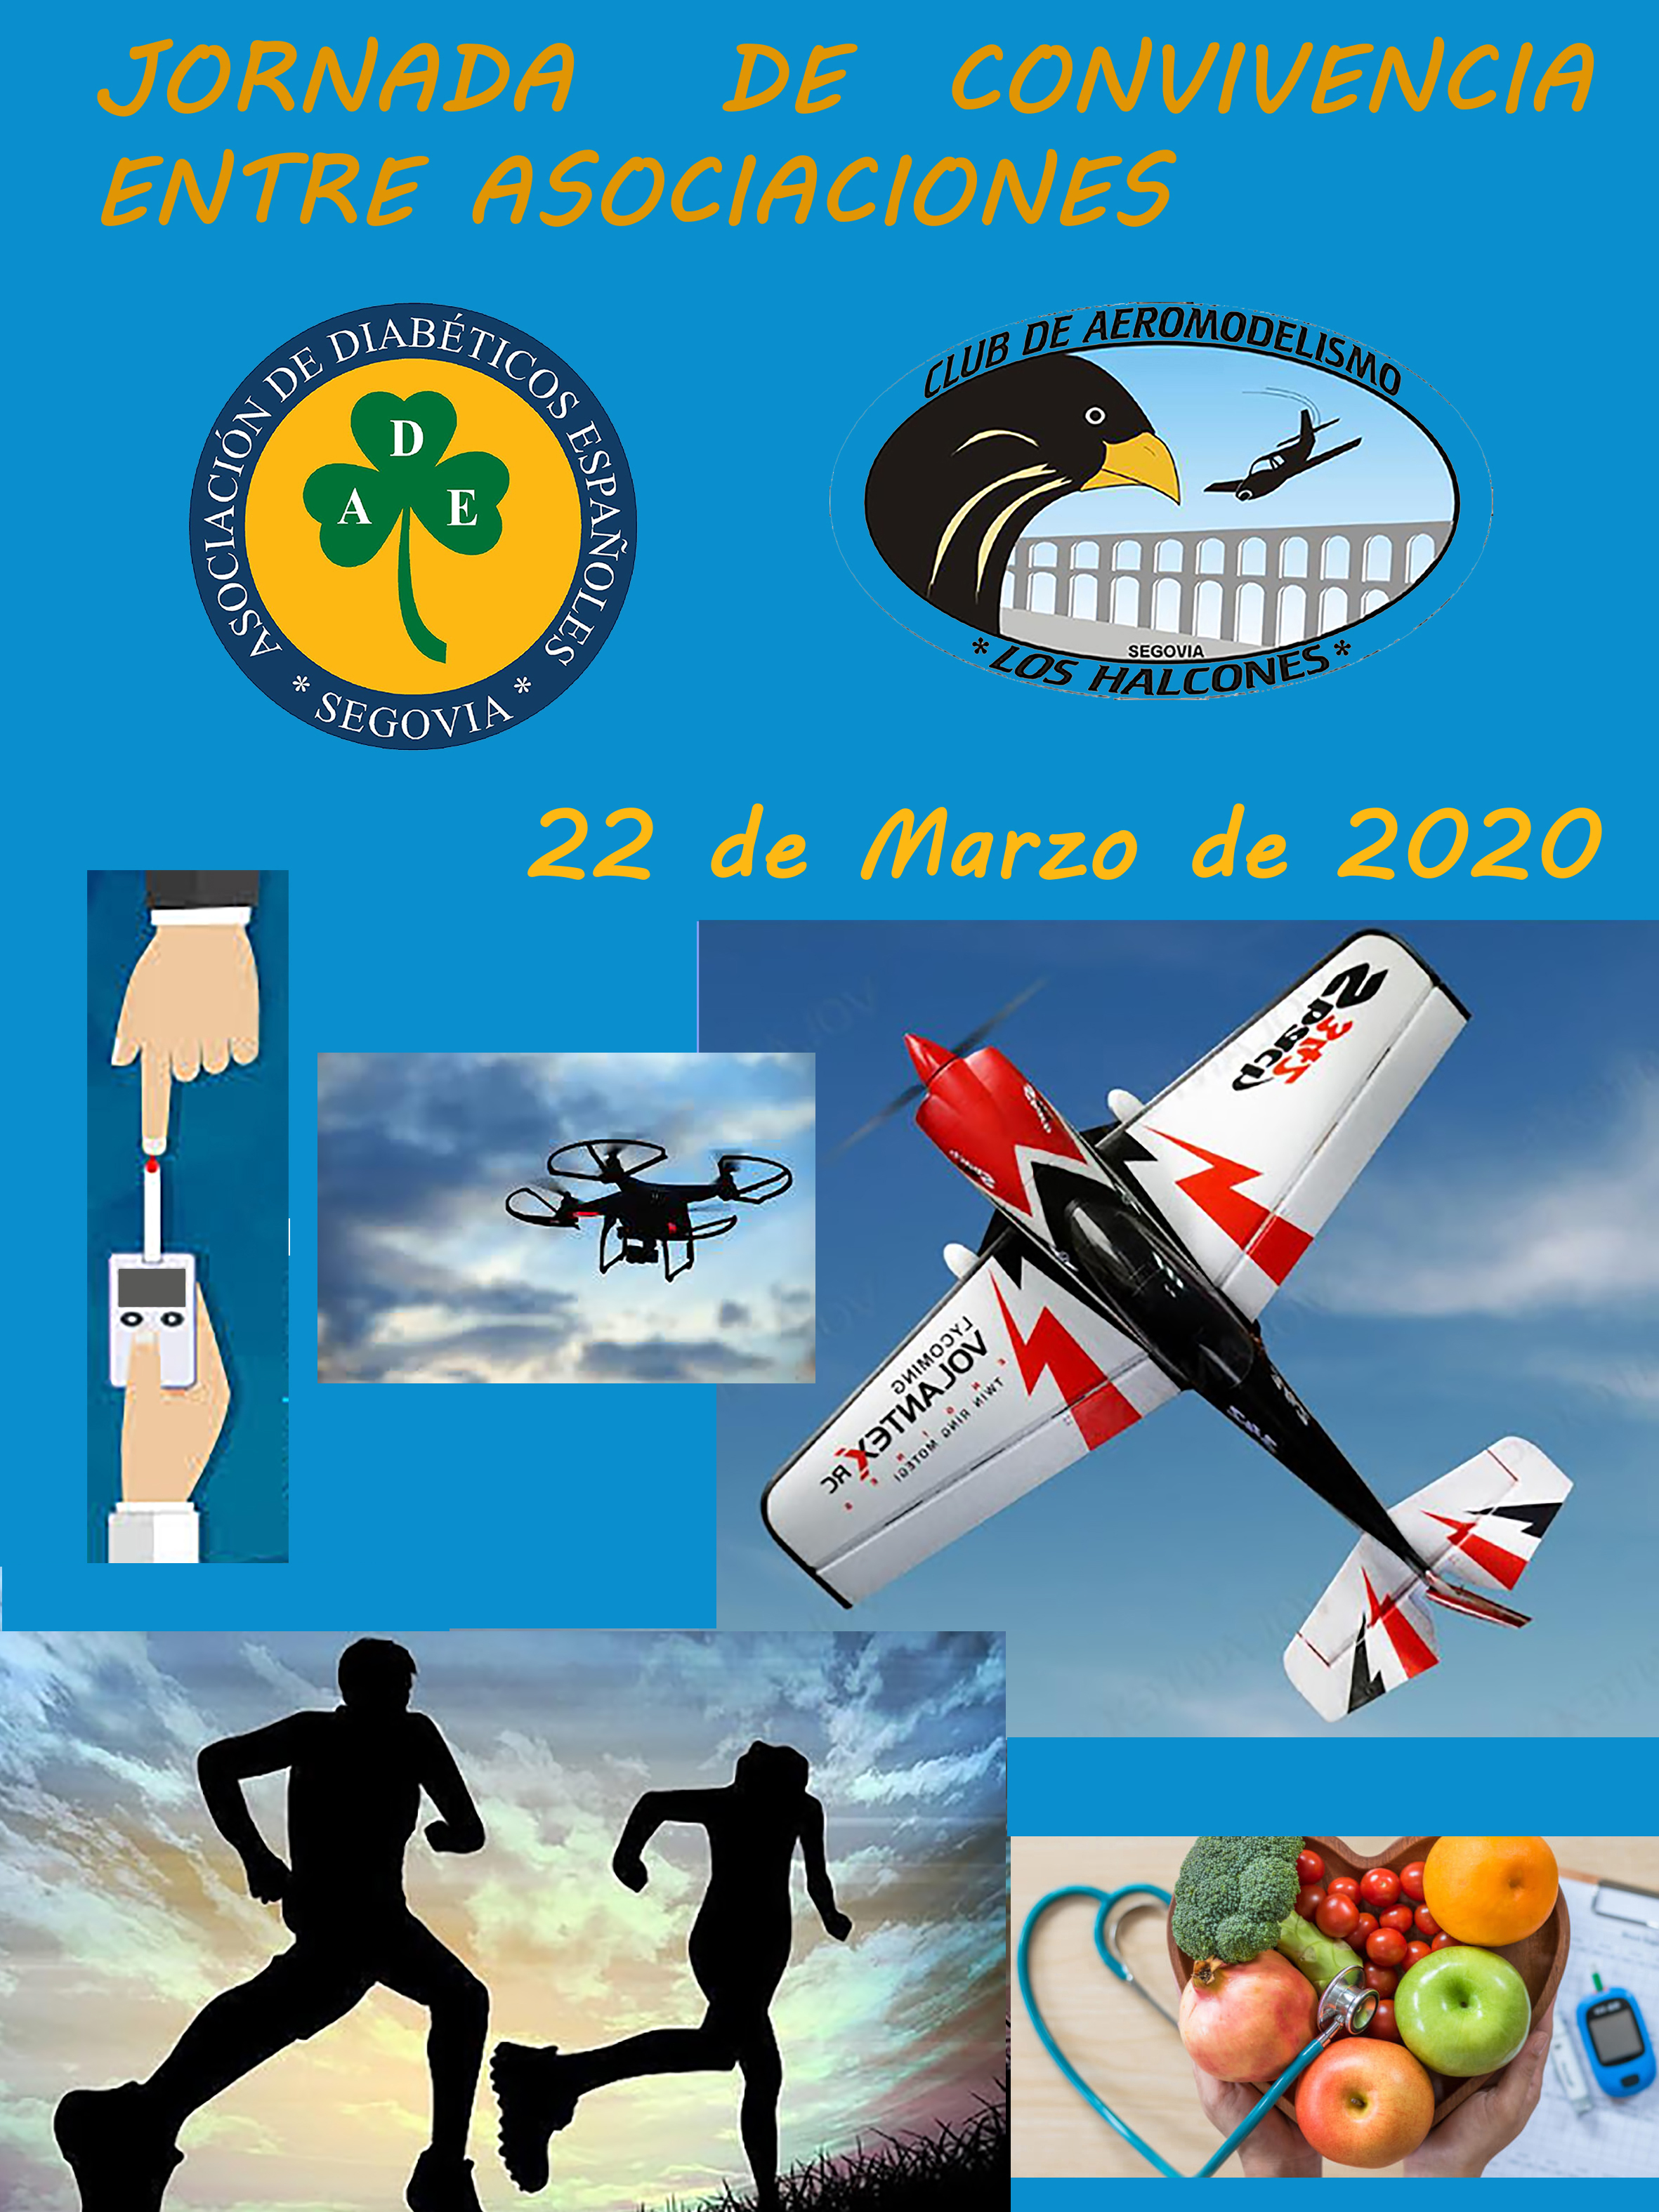 Jornada de convivencia entre el Club de Aeromodelismo “Los Halcones” y la Asociación de diabetes de Segovia